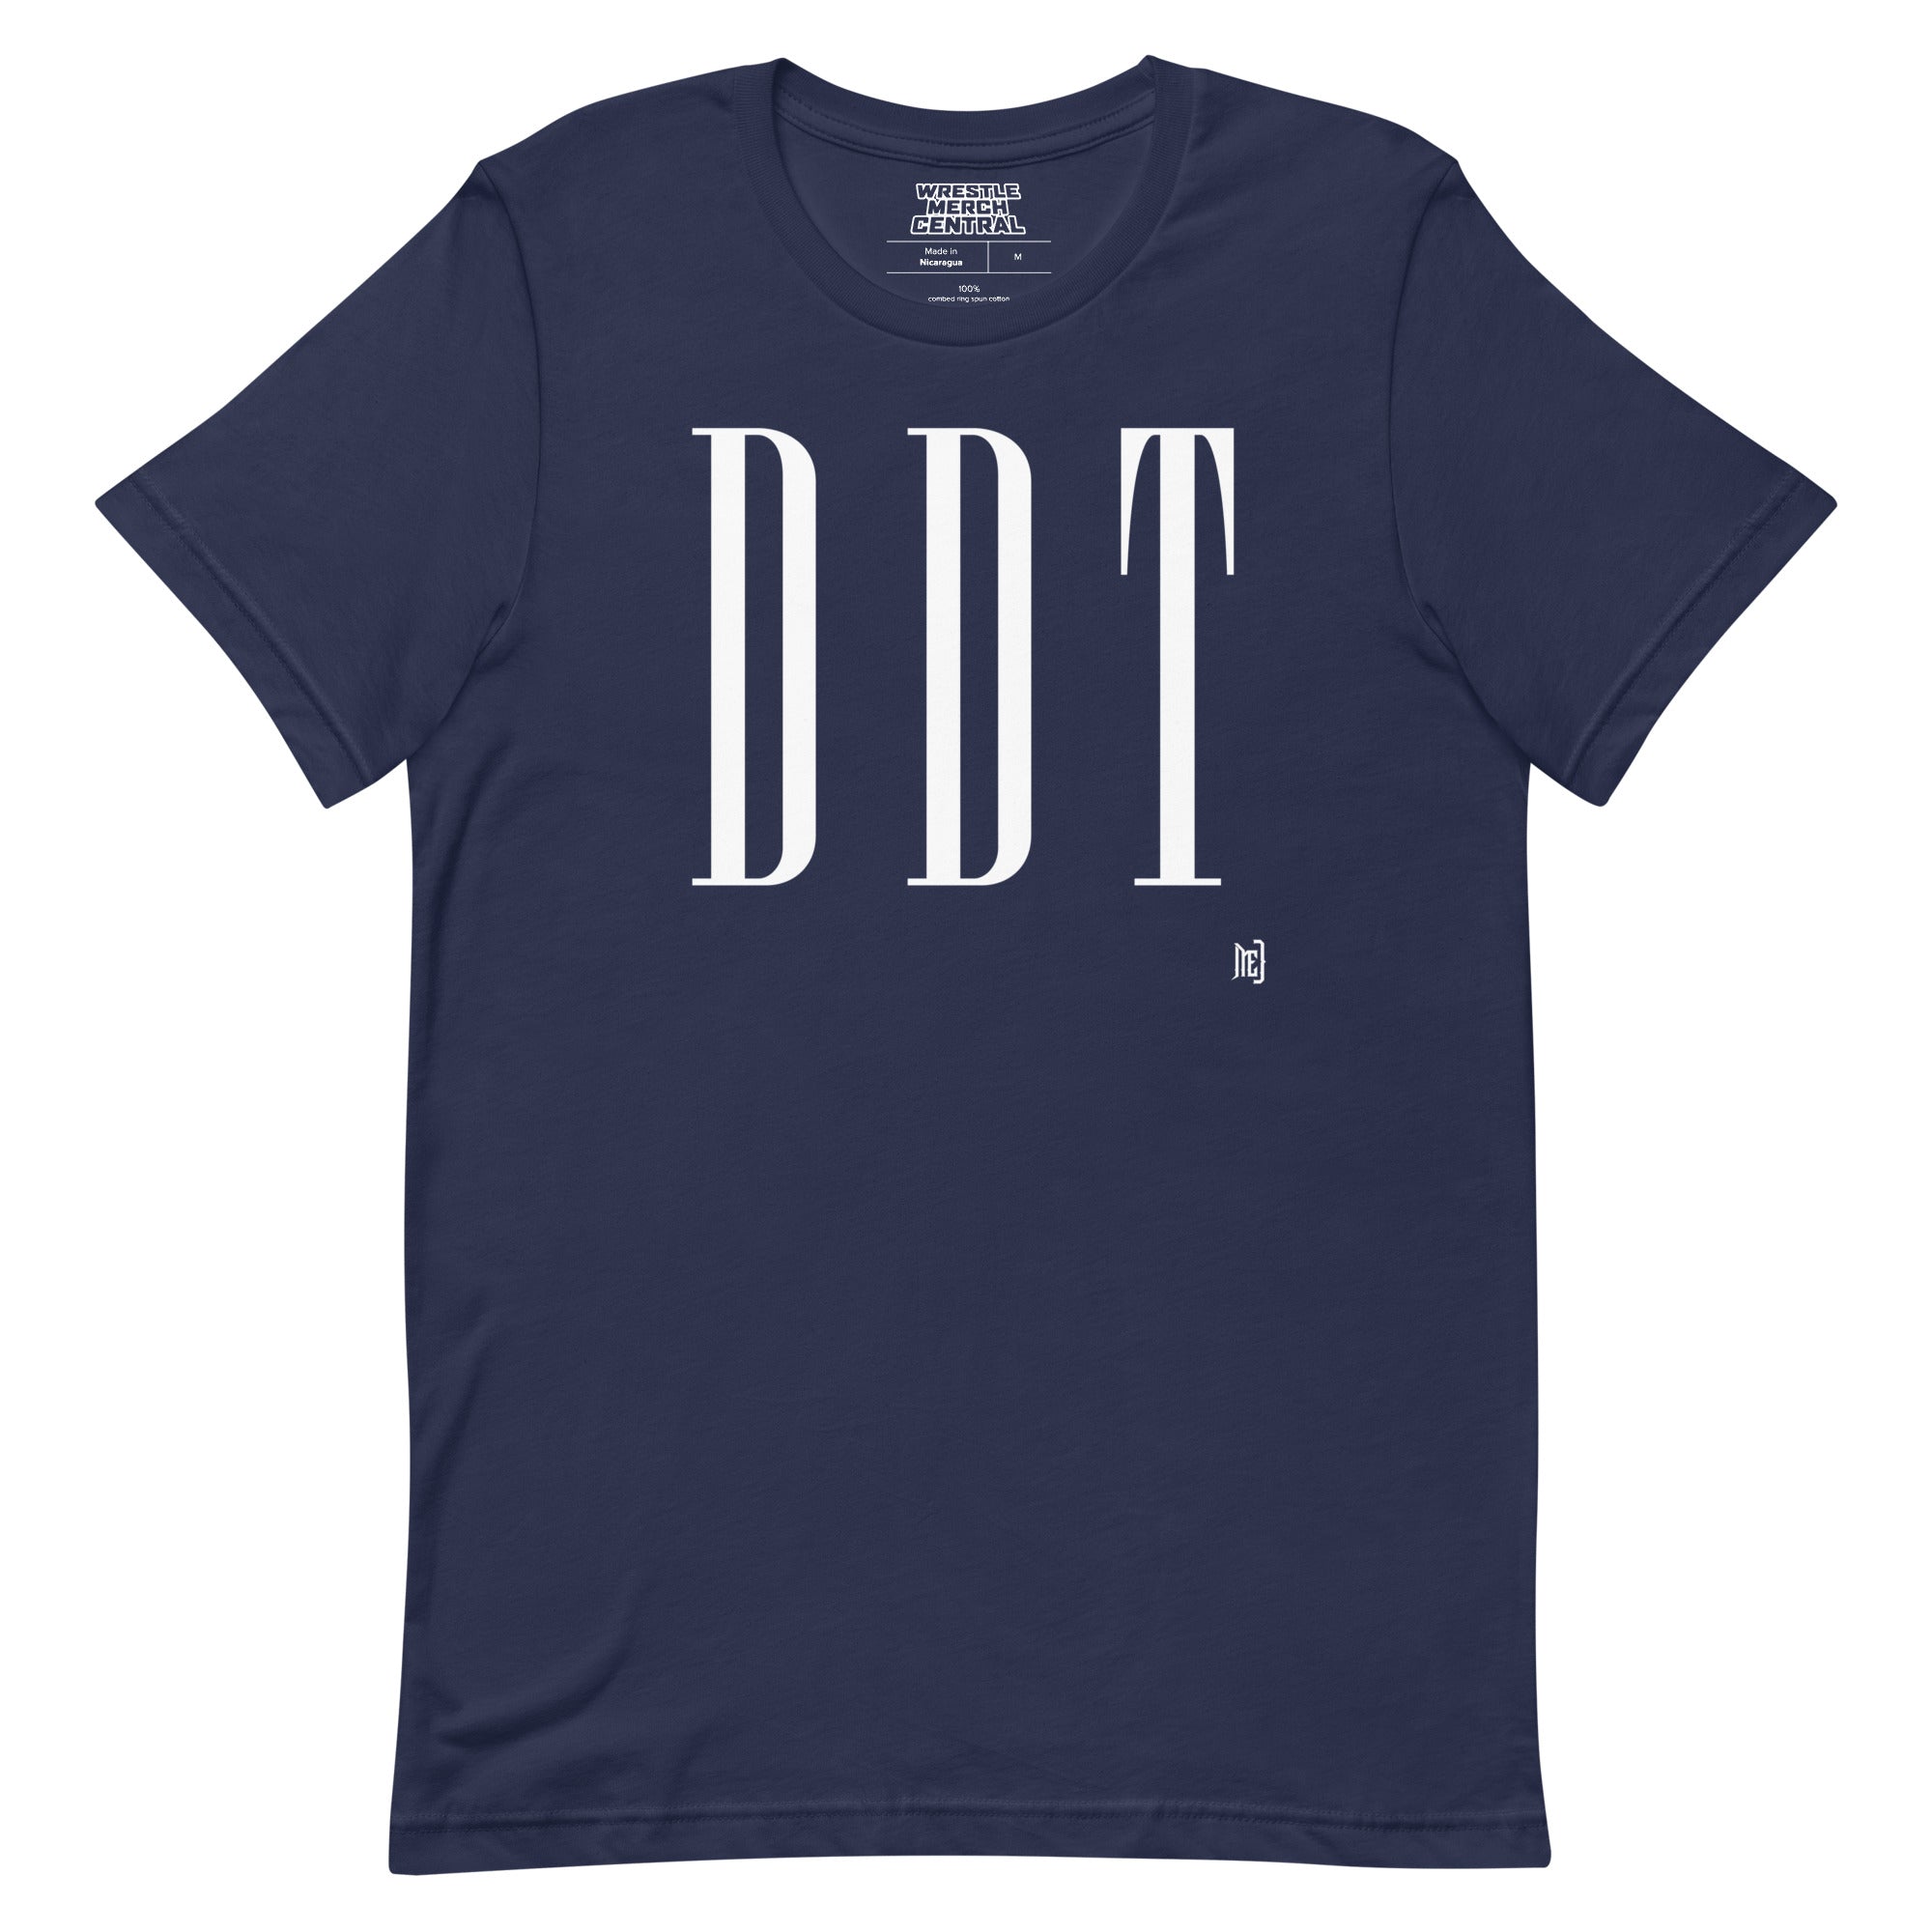 ME DDT Unisex T-Shirt